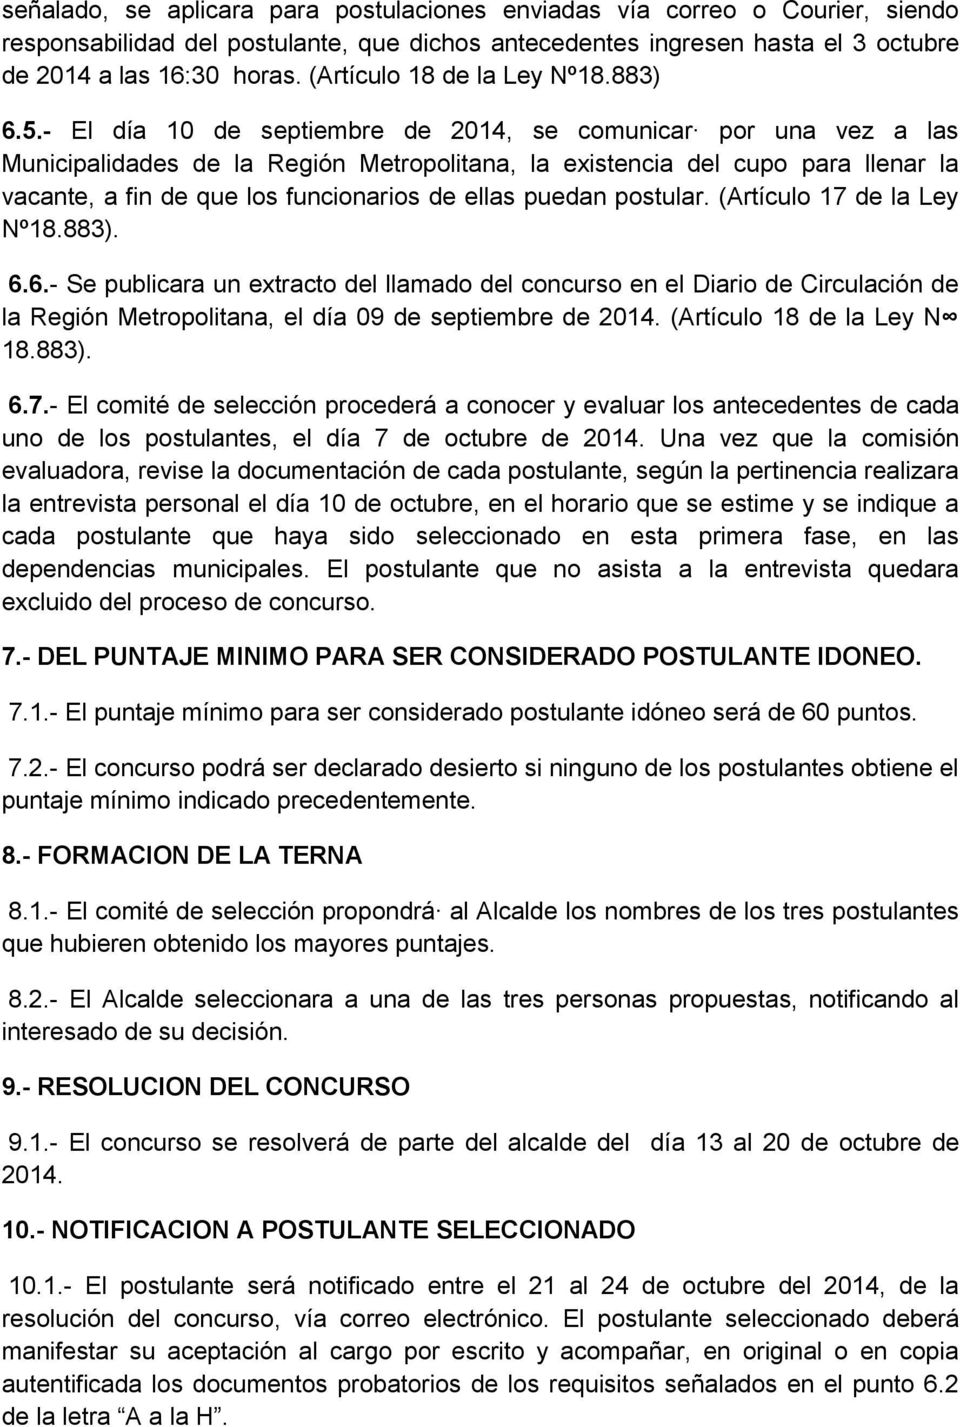 - El día 10 de septiembre de 2014, se comunicar por una vez a las Municipalidades de la Región Metropolitana, la existencia del cupo para llenar la vacante, a fin de que los funcionarios de ellas